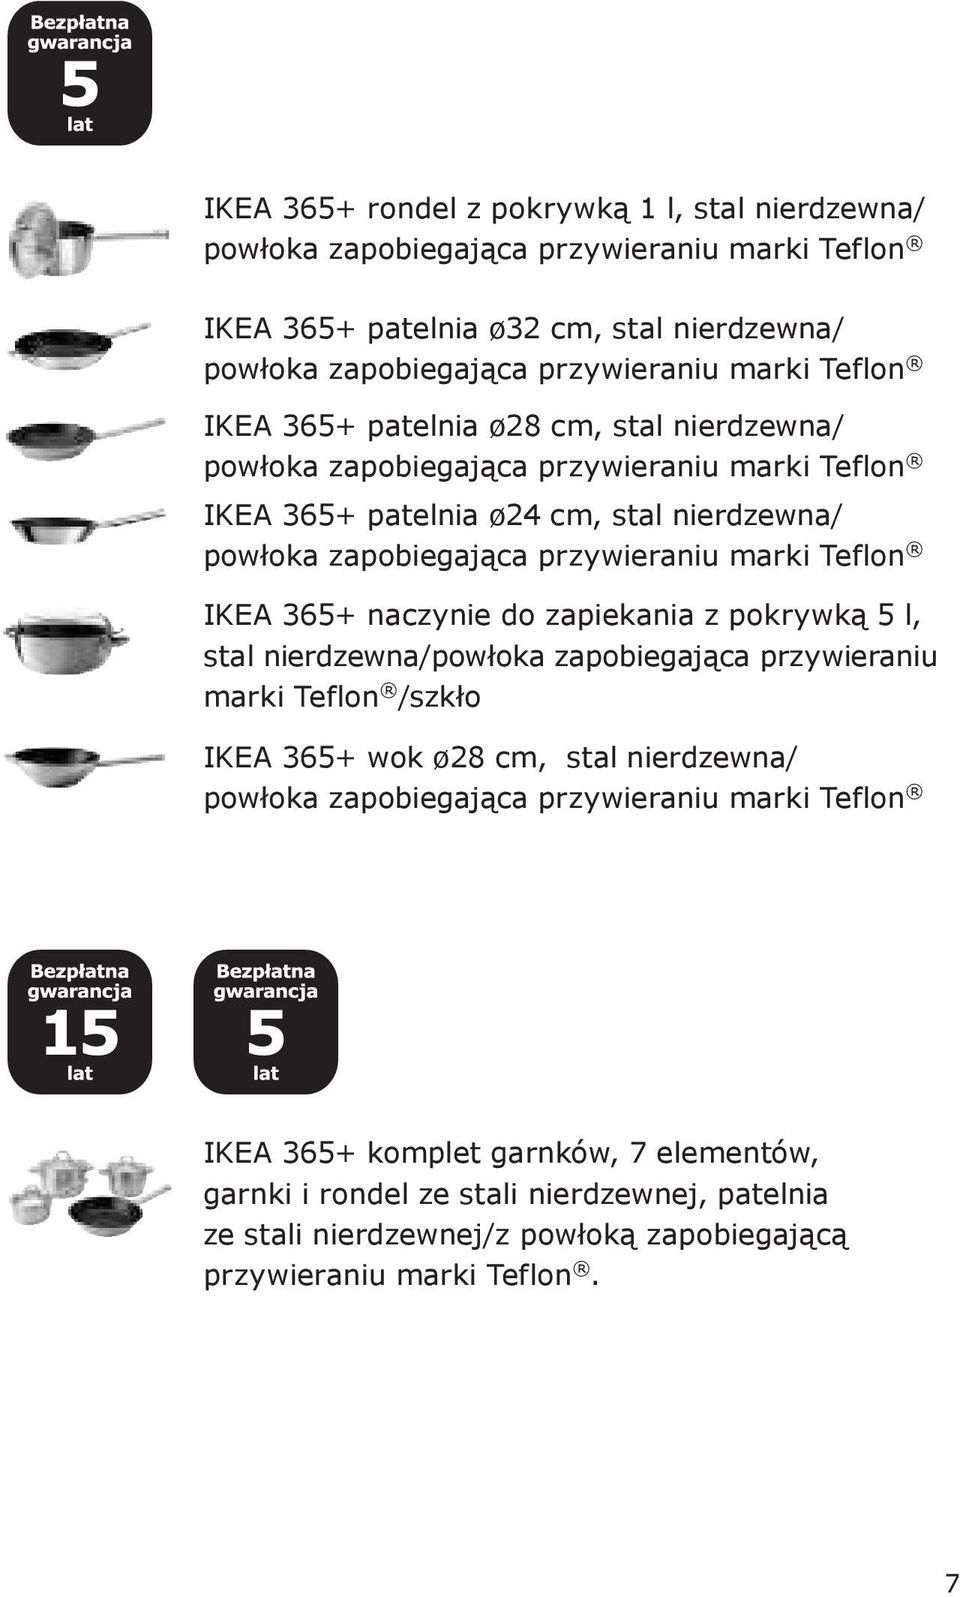 Teflon IKEA 365+ naczynie do zapiekania z pokrywką 5 l, stal nierdzewna/powłoka zapobiegająca przywieraniu marki Teflon /szkło IKEA 365+ wok ø28 cm, stal nierdzewna/ powłoka